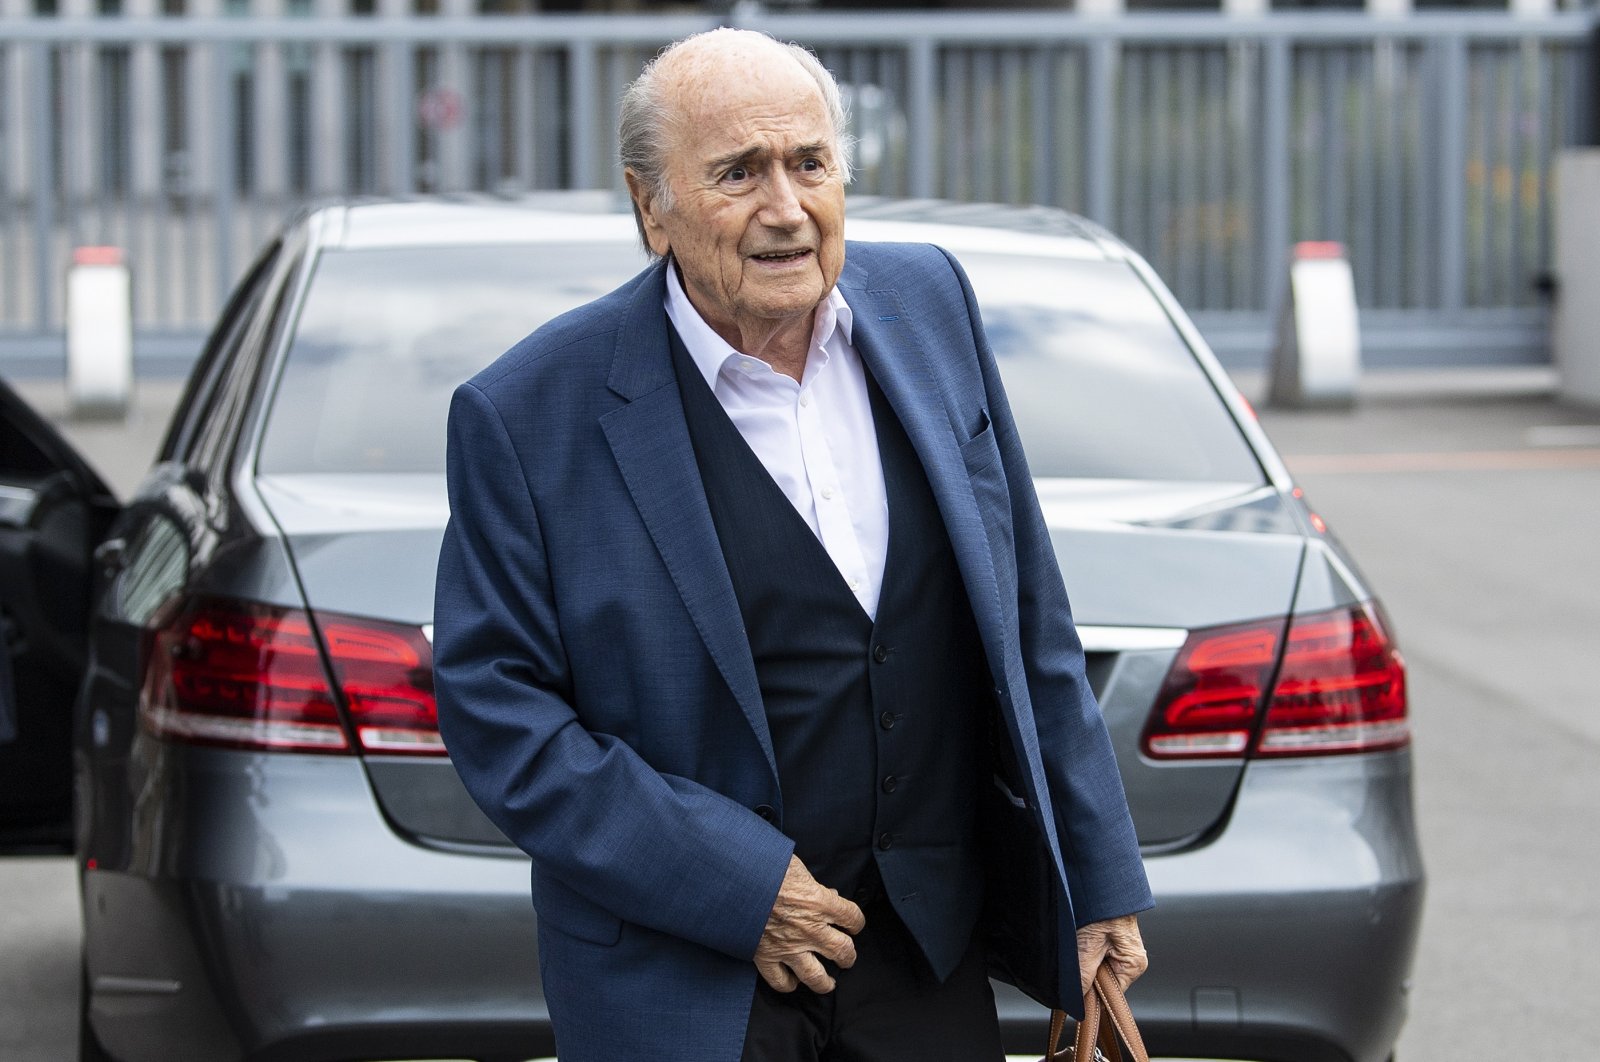 Former FIFA president Sepp Blatter arrives for questioning in Bern, Switzerland, Sept. 1, 2020. (EPA Photo)